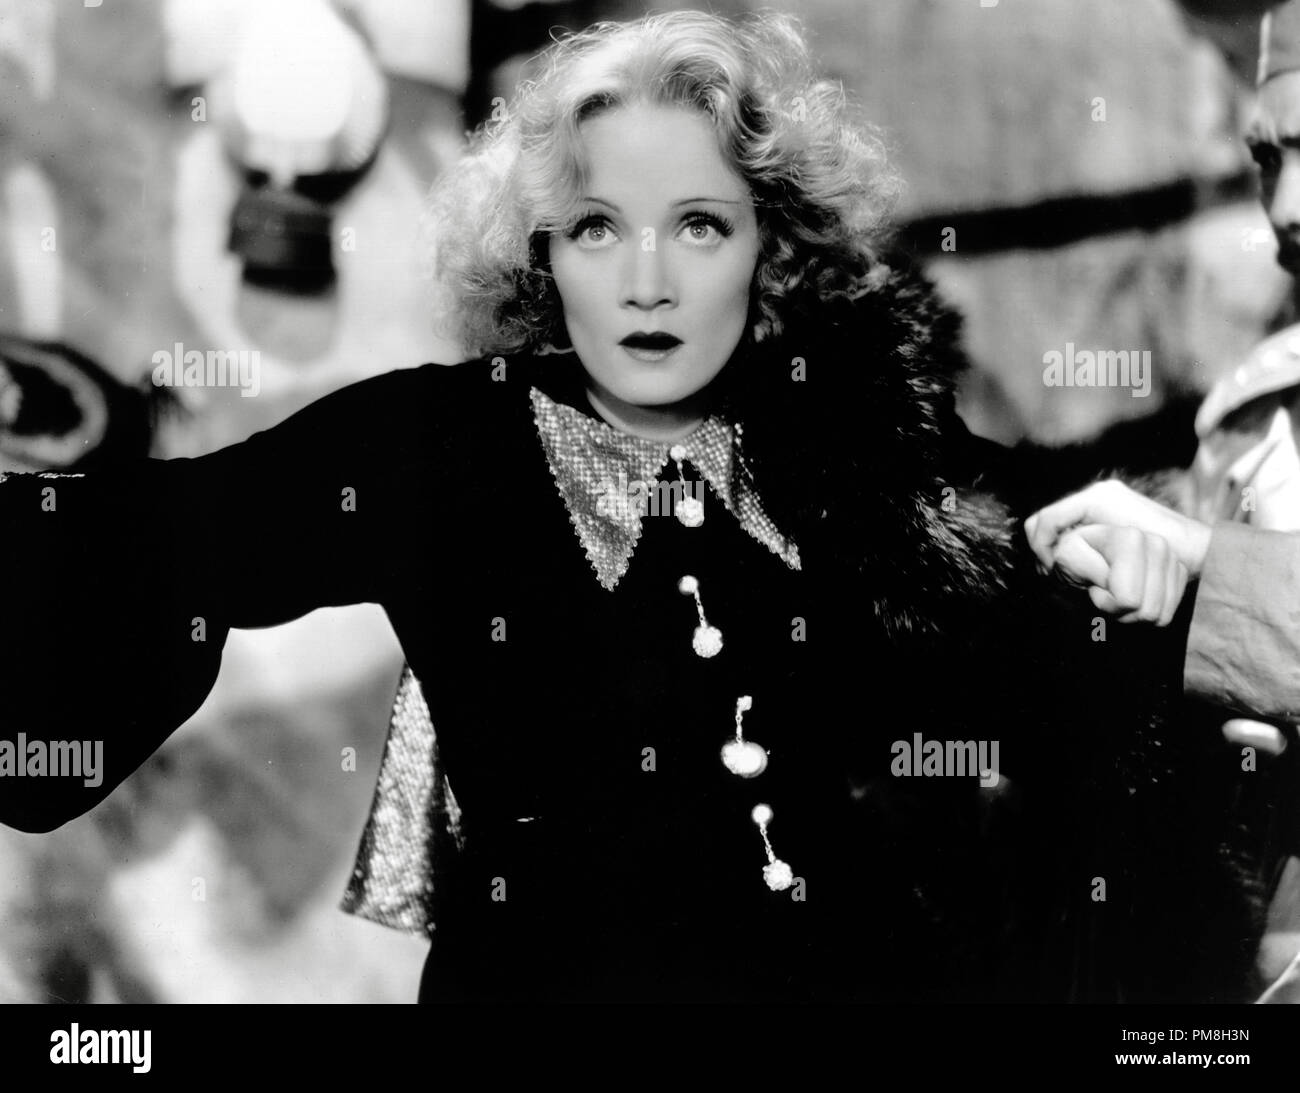 (Archivage classique du cinéma - Marlene Dietrich rétrospective) 'Shanghai Express' Marlene Dietrich 1932 Cinéma Paramount Publishers Collection de référence de dossier 31496 018THA Banque D'Images